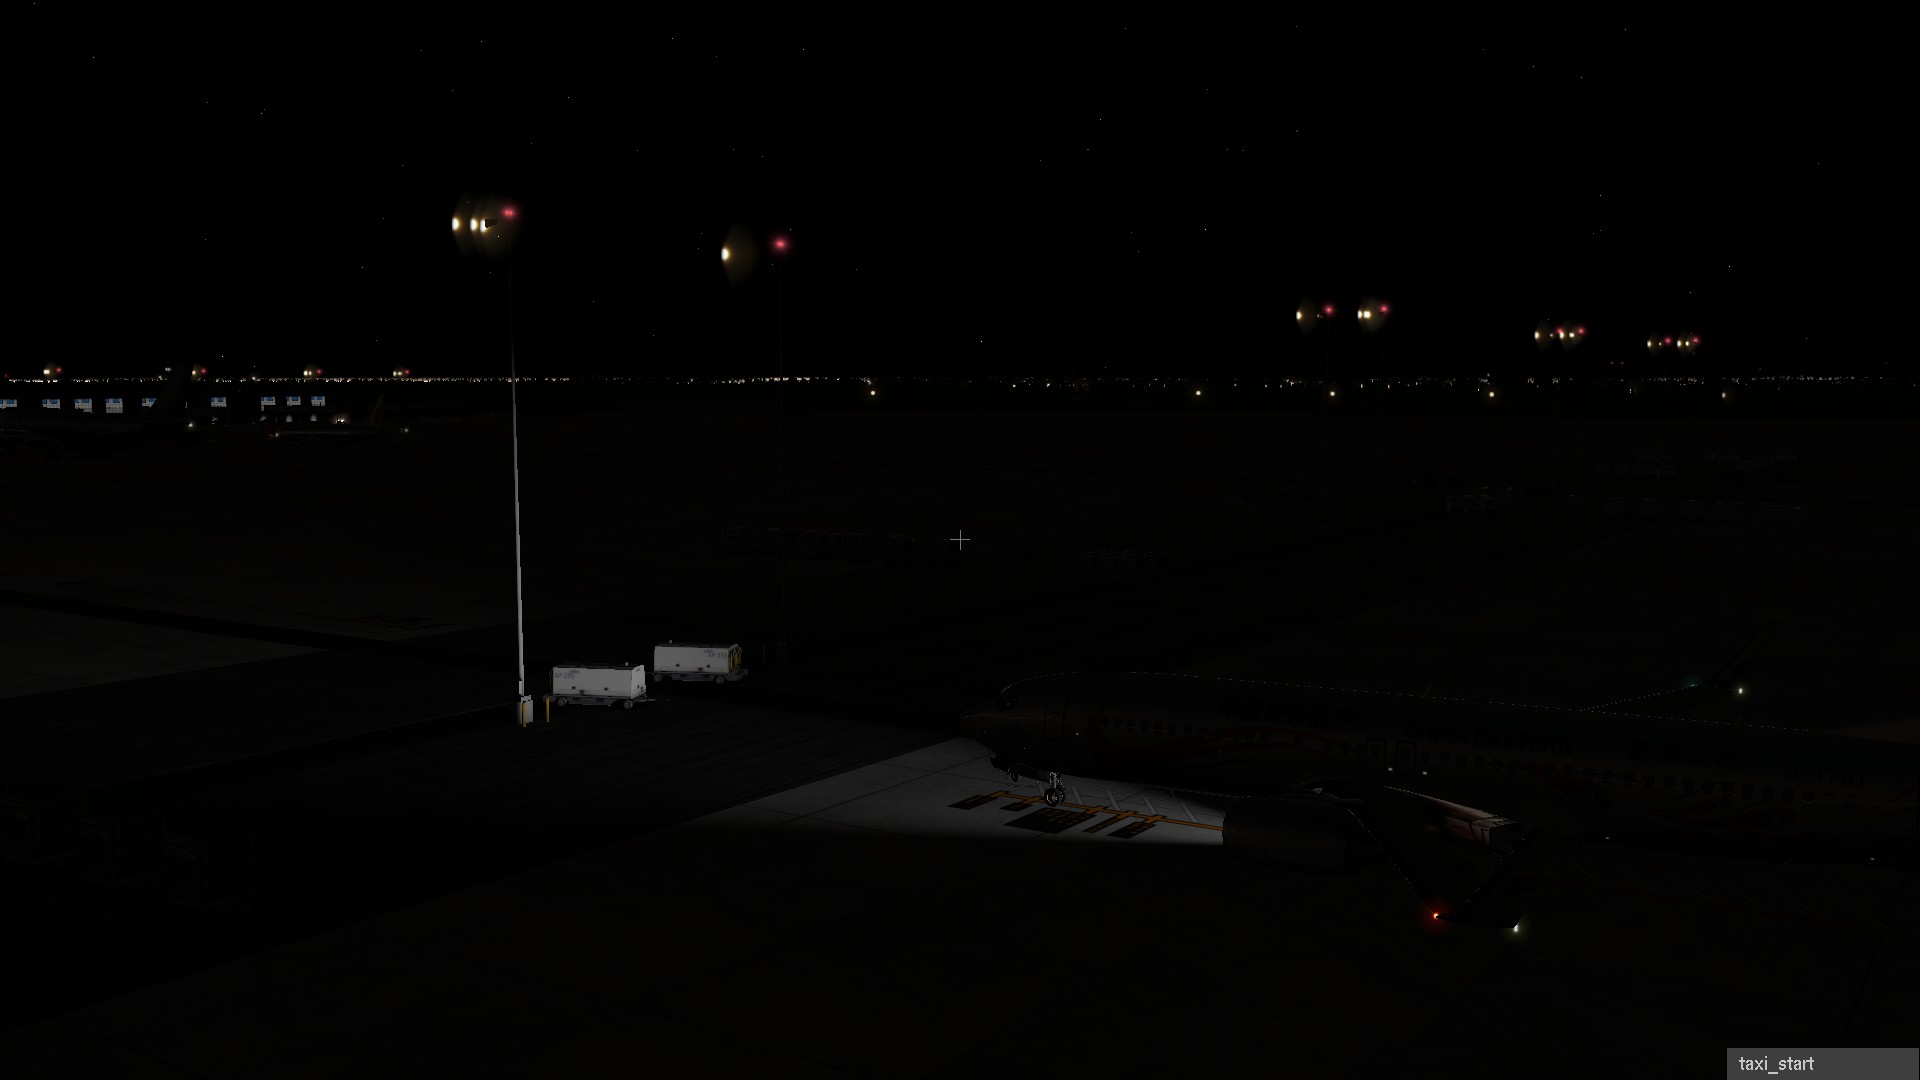 机场灯光亮度不够，照不到地面。而且机舱内照明灯打不开-4859 